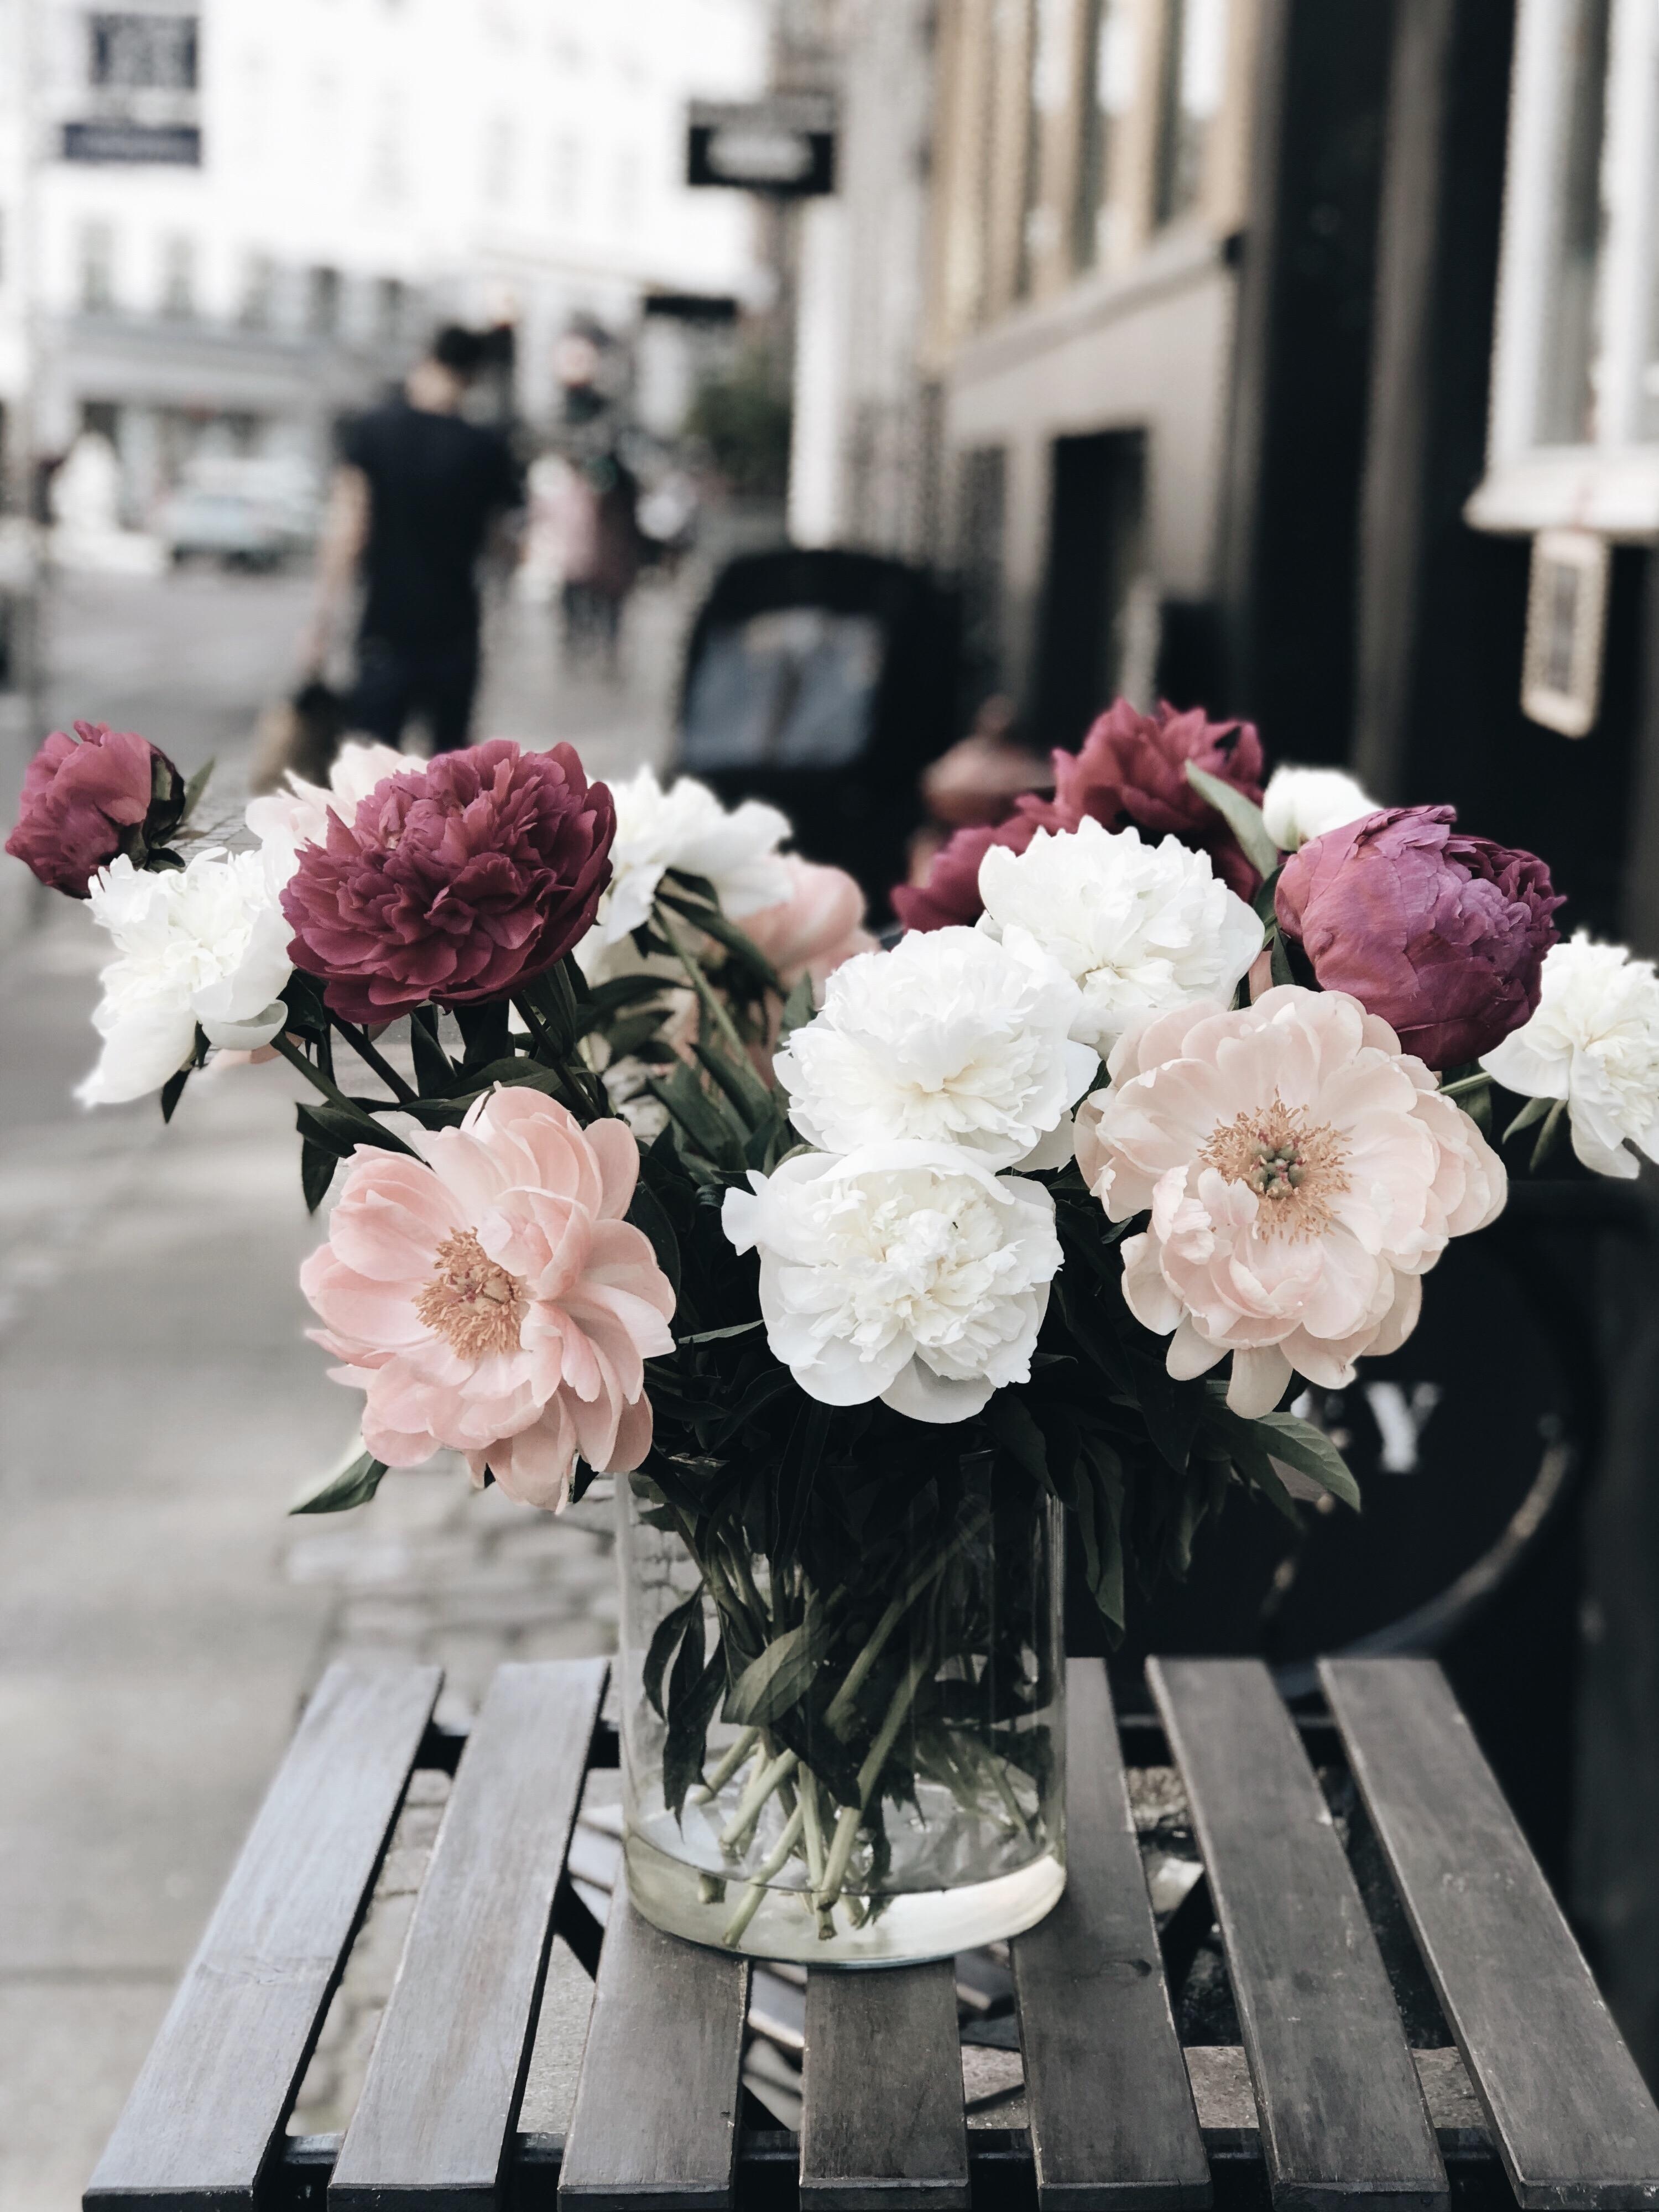 #blumengrüße aus #copenhagen
#flowerlover#flowerlove#bouquet
#peony#denmark#københavn